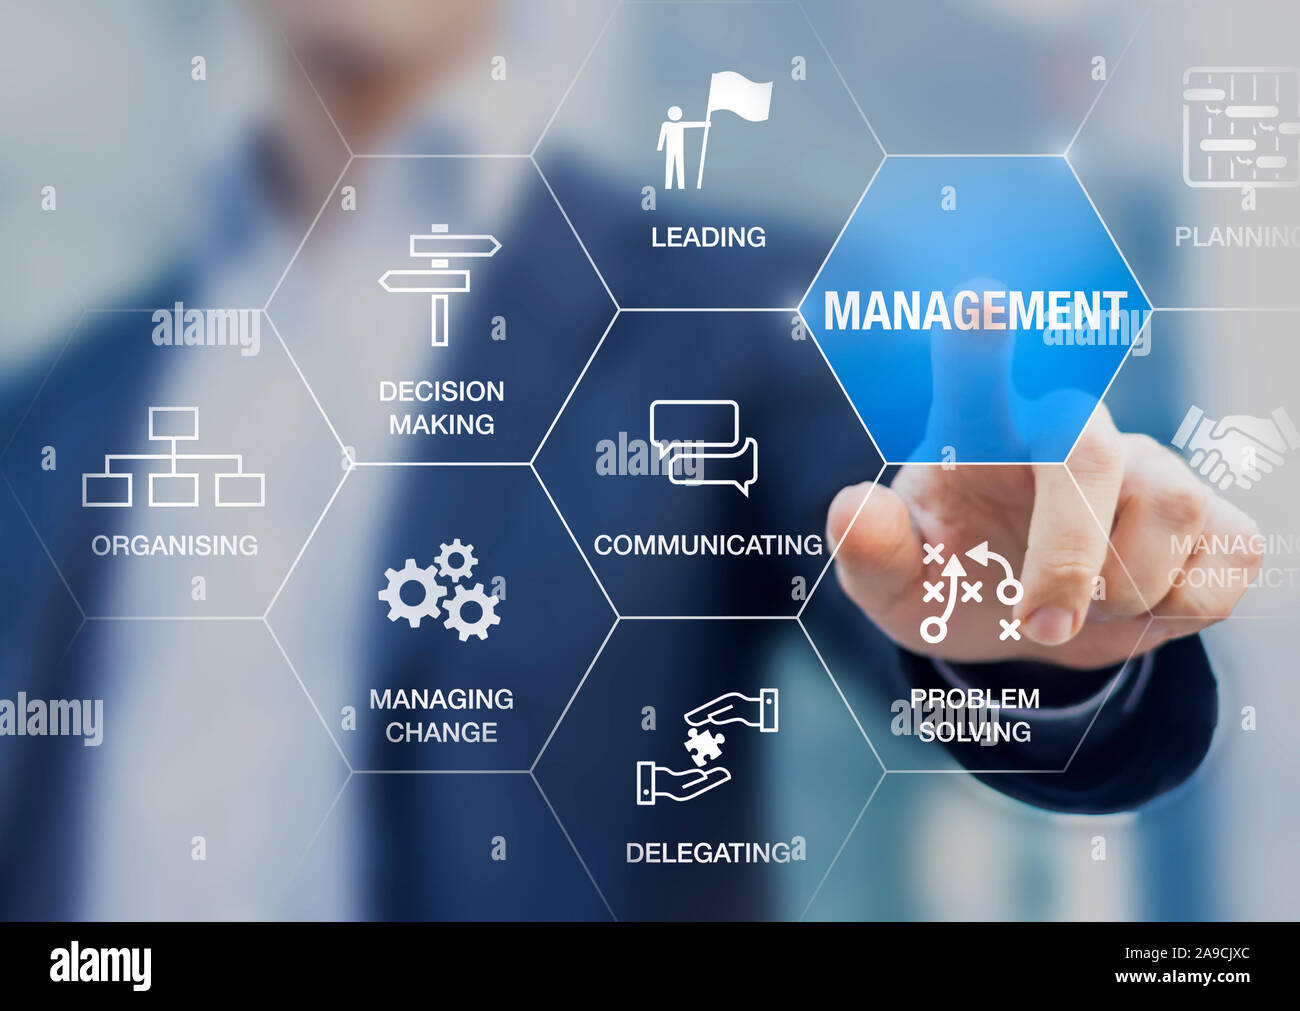 Management Skills Konzept mit Manager berühren Symbole der professionellen Verwaltung von Kompetenz, Führung, Kommunikation, Organisation, Vergabe, Problem s Stockfoto